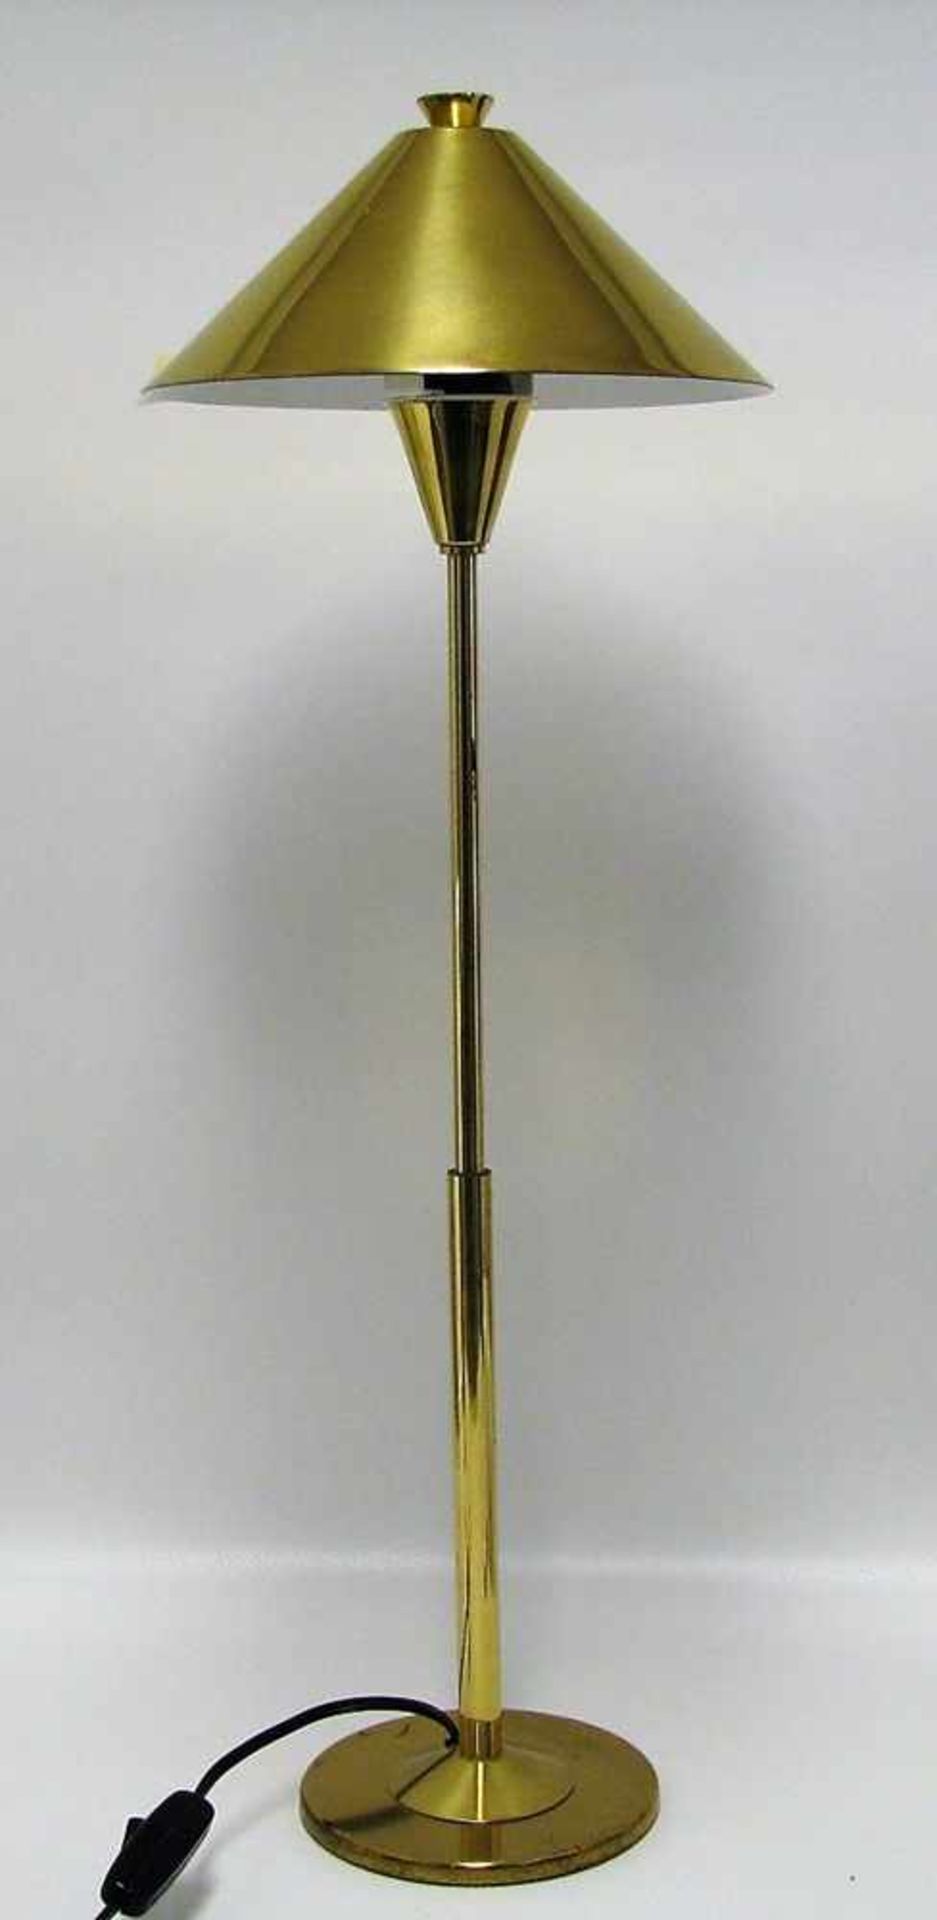 Designer-Tischlampe, 1970er Jahre, Messing, einflammig, h 59 cm, d 20 cm.